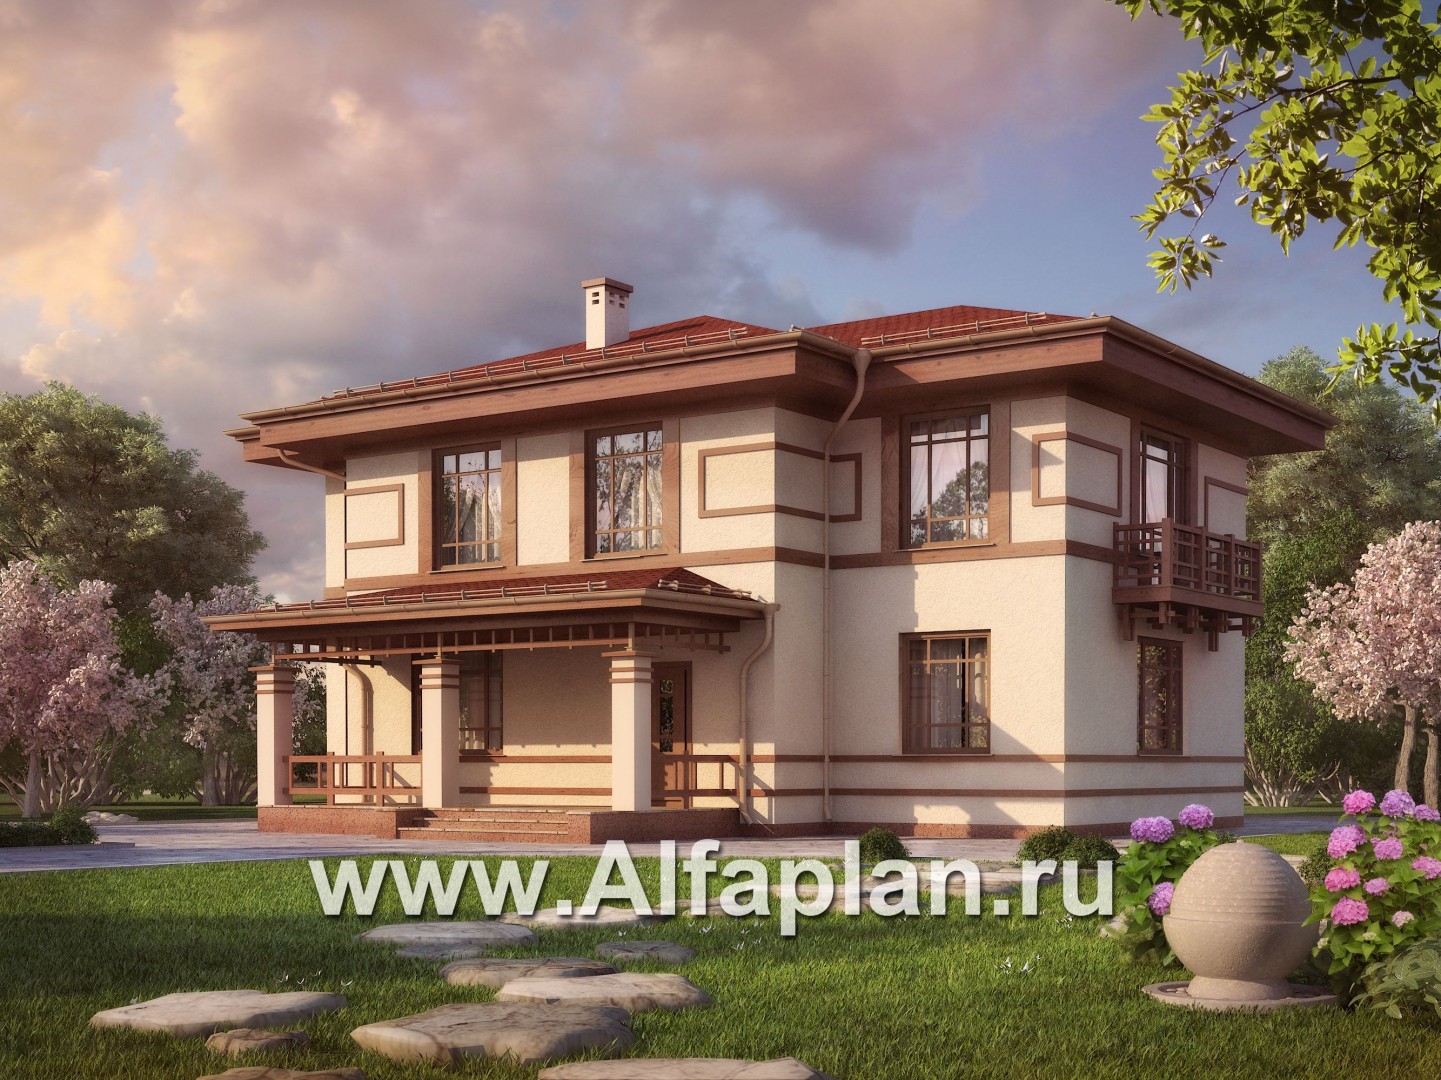 Проекты домов Альфаплан - Двухэтажный дом с восточными мотивами - дополнительное изображение №1